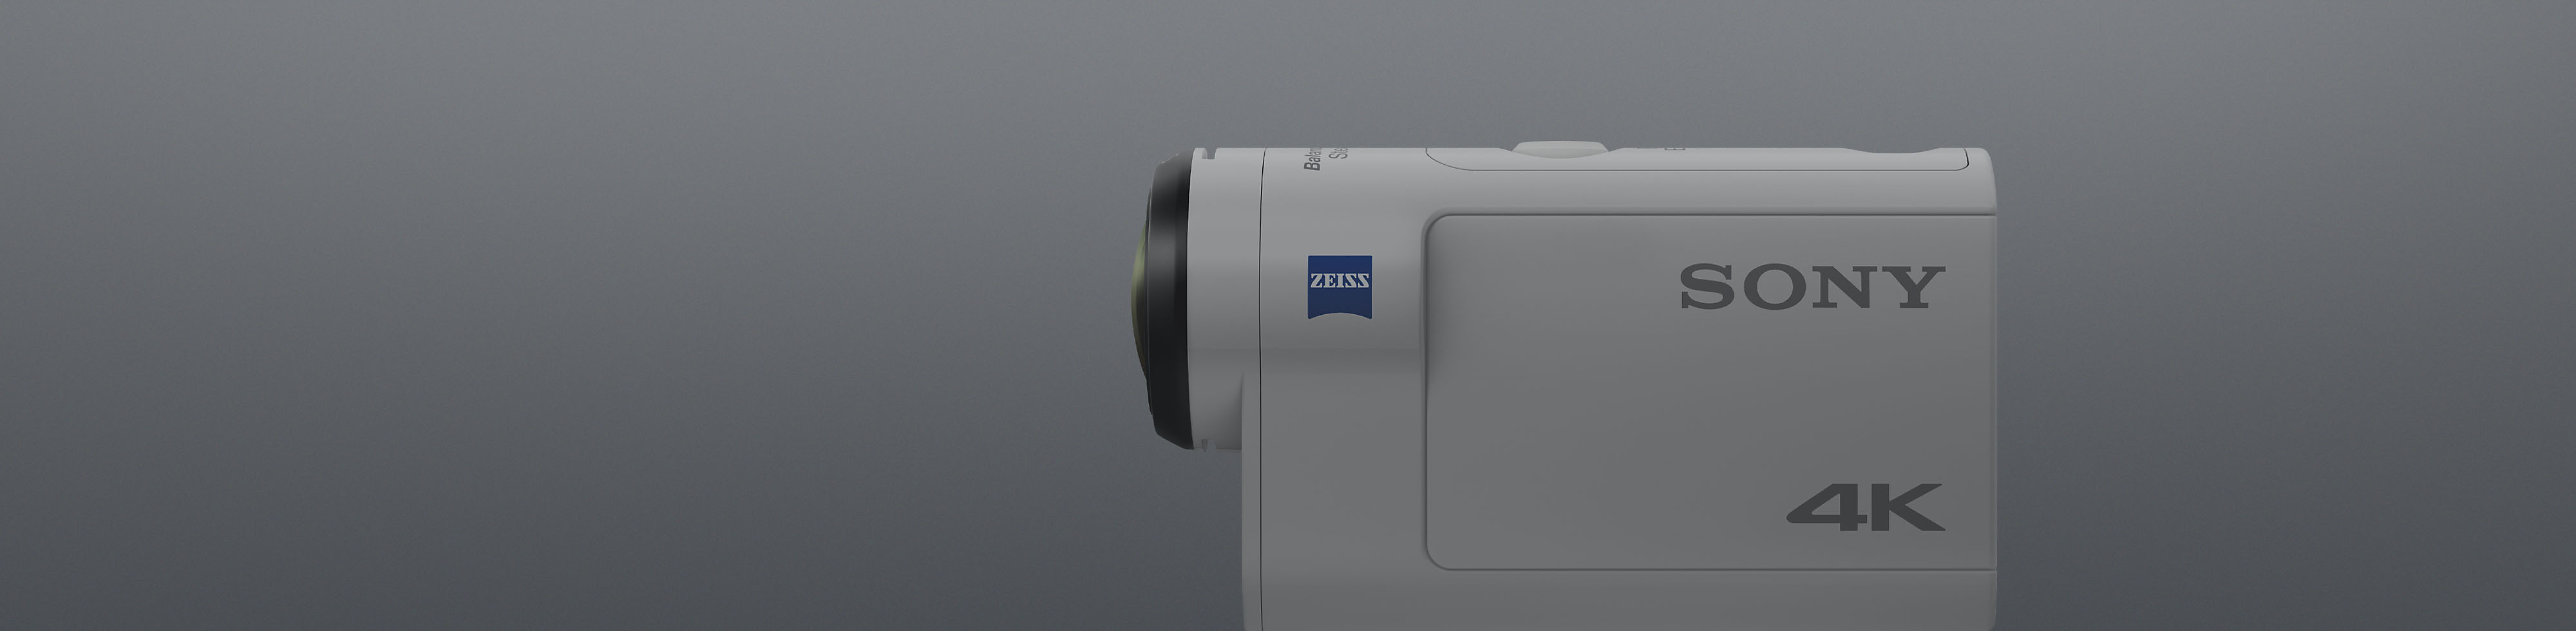 Pogled bele akcijske kamere Sony 4K od strani